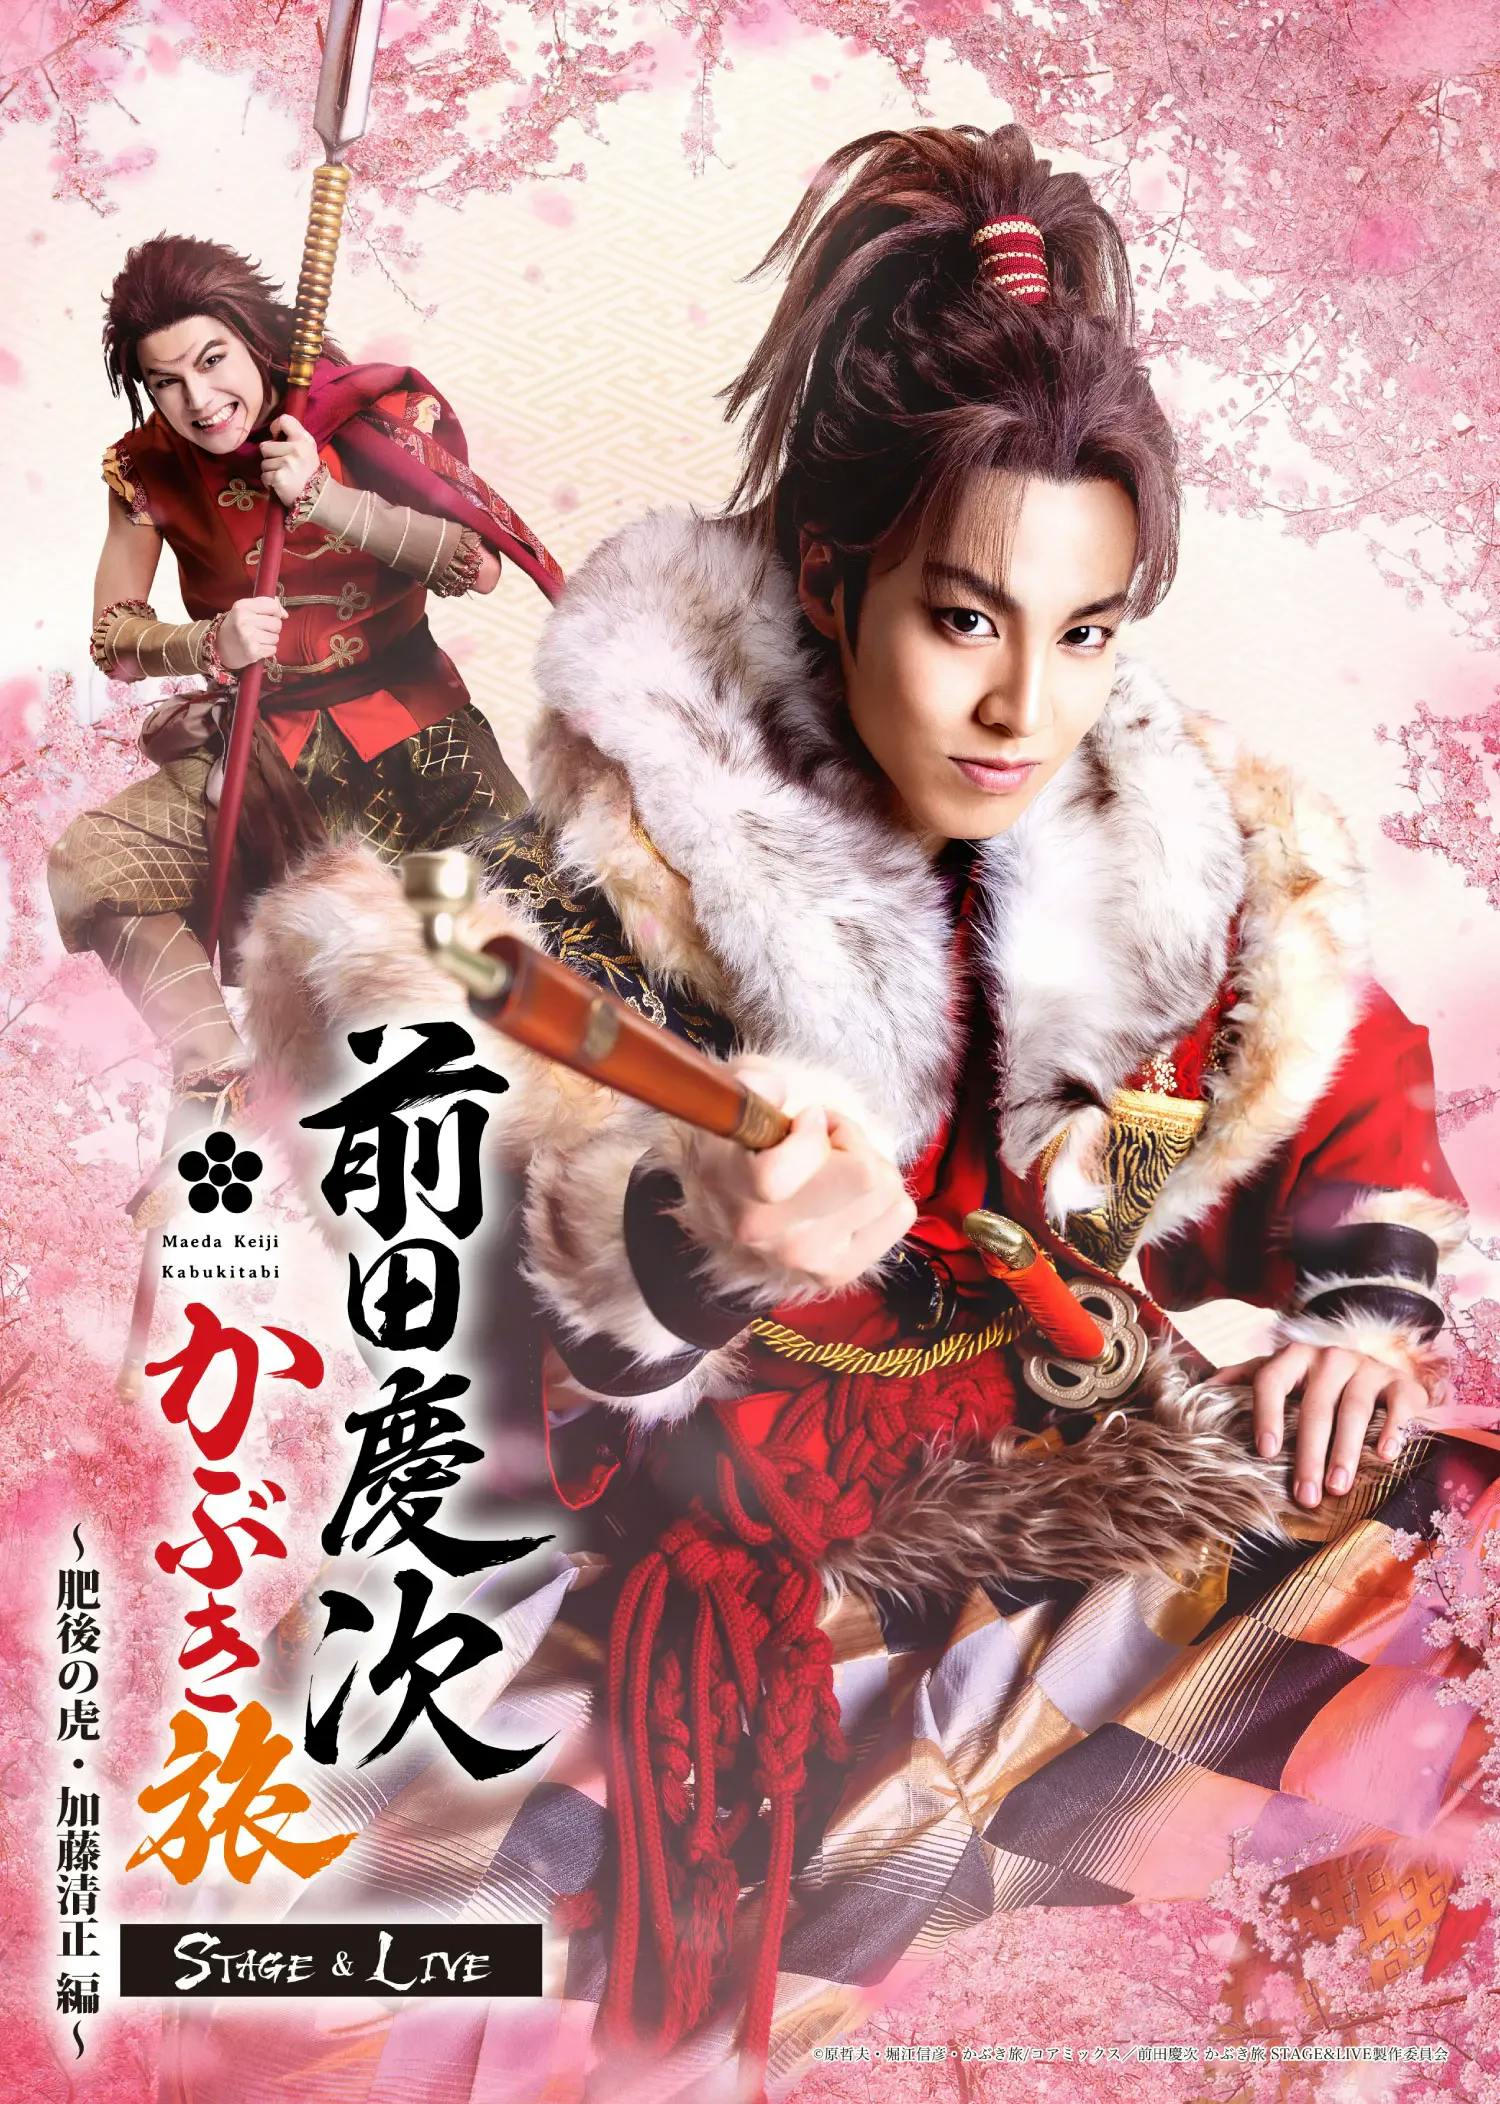 ริคุจาก “THE RAMPAGE” ดารา! “Keiji Maeda Kabuki Tabi STAGE&LIVE ~Higo Tora/Kato Kiyomasa Edition~” จะแสดงที่โตเกียวและโอซาก้าในเดือนกันยายน!